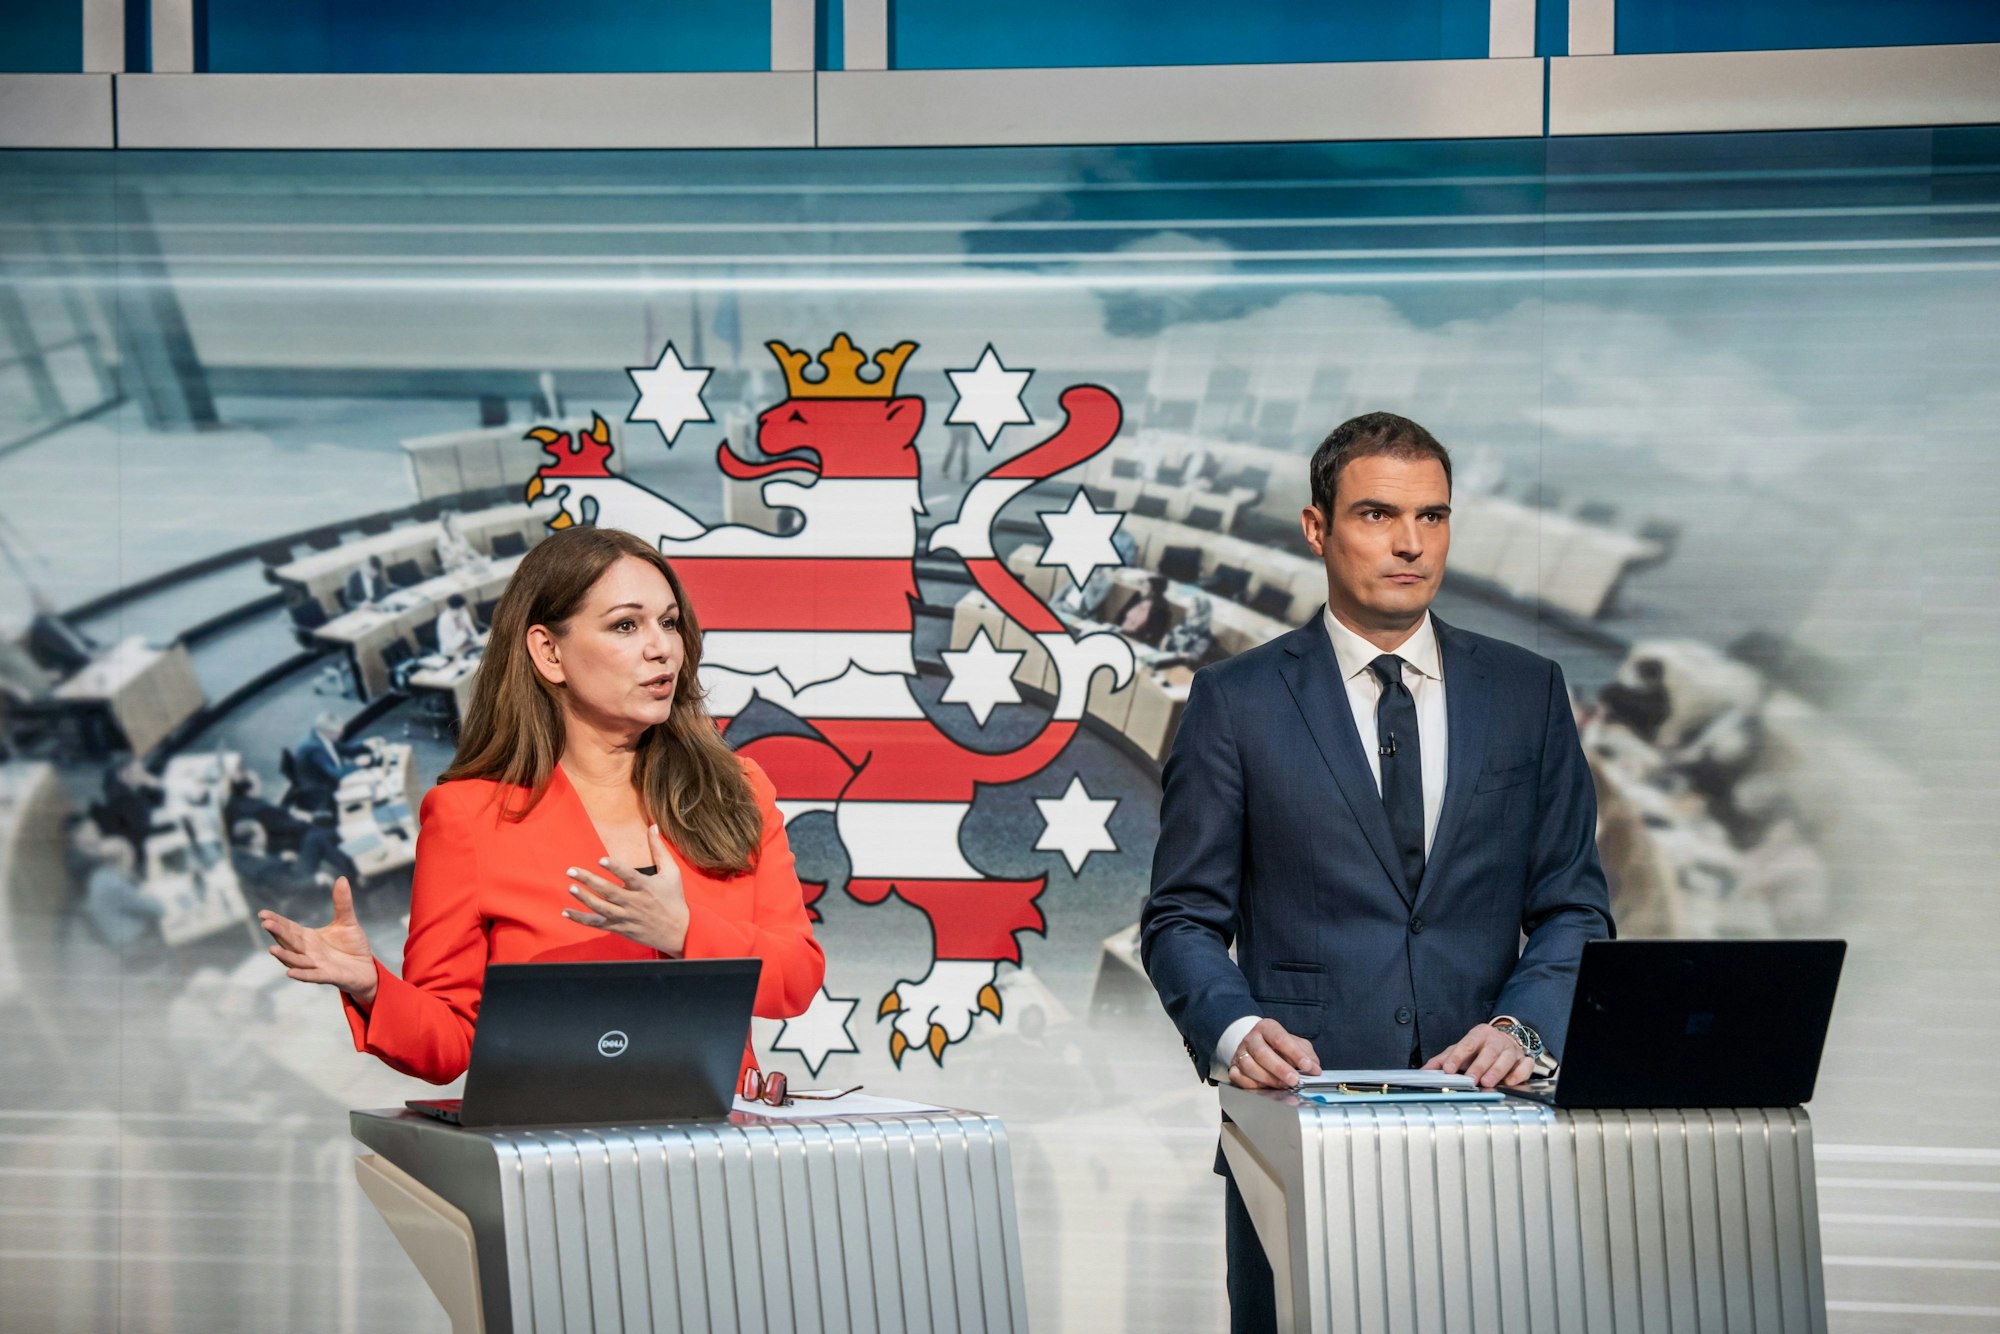 Tatjana Ohm, Welt-TV-Chefmoderatorin und Jan Philipp Burgard, Welt-TV Chefredakteur stehen beim TV-Duell bei Welt TV von Höcke (AfD) und Voigt (CDU), Spitzenkandidaten für die Landtagswahl in Thüringen.